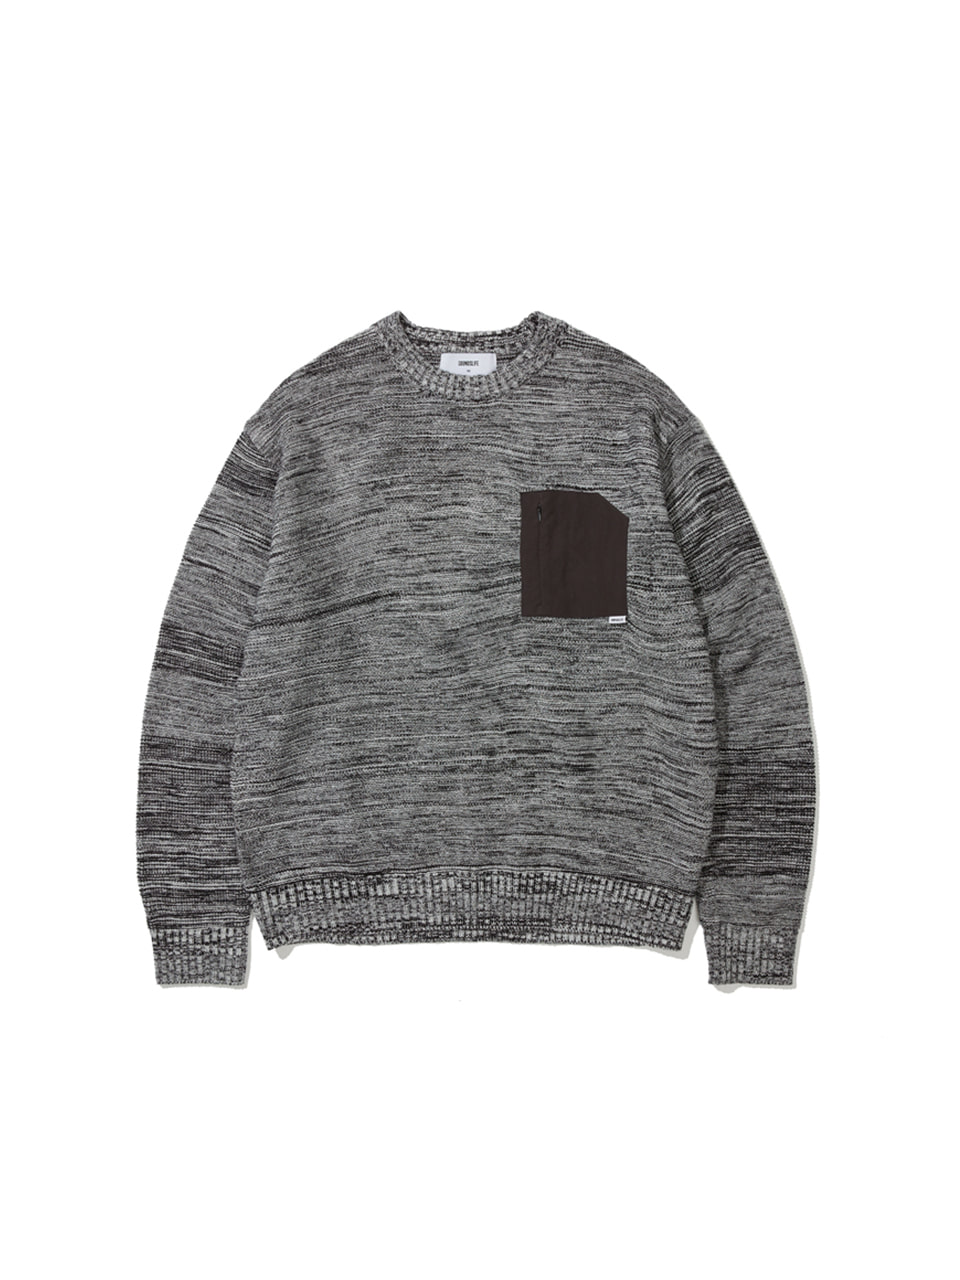 SOUNDSLIFE - Marled Knit Sweater Black